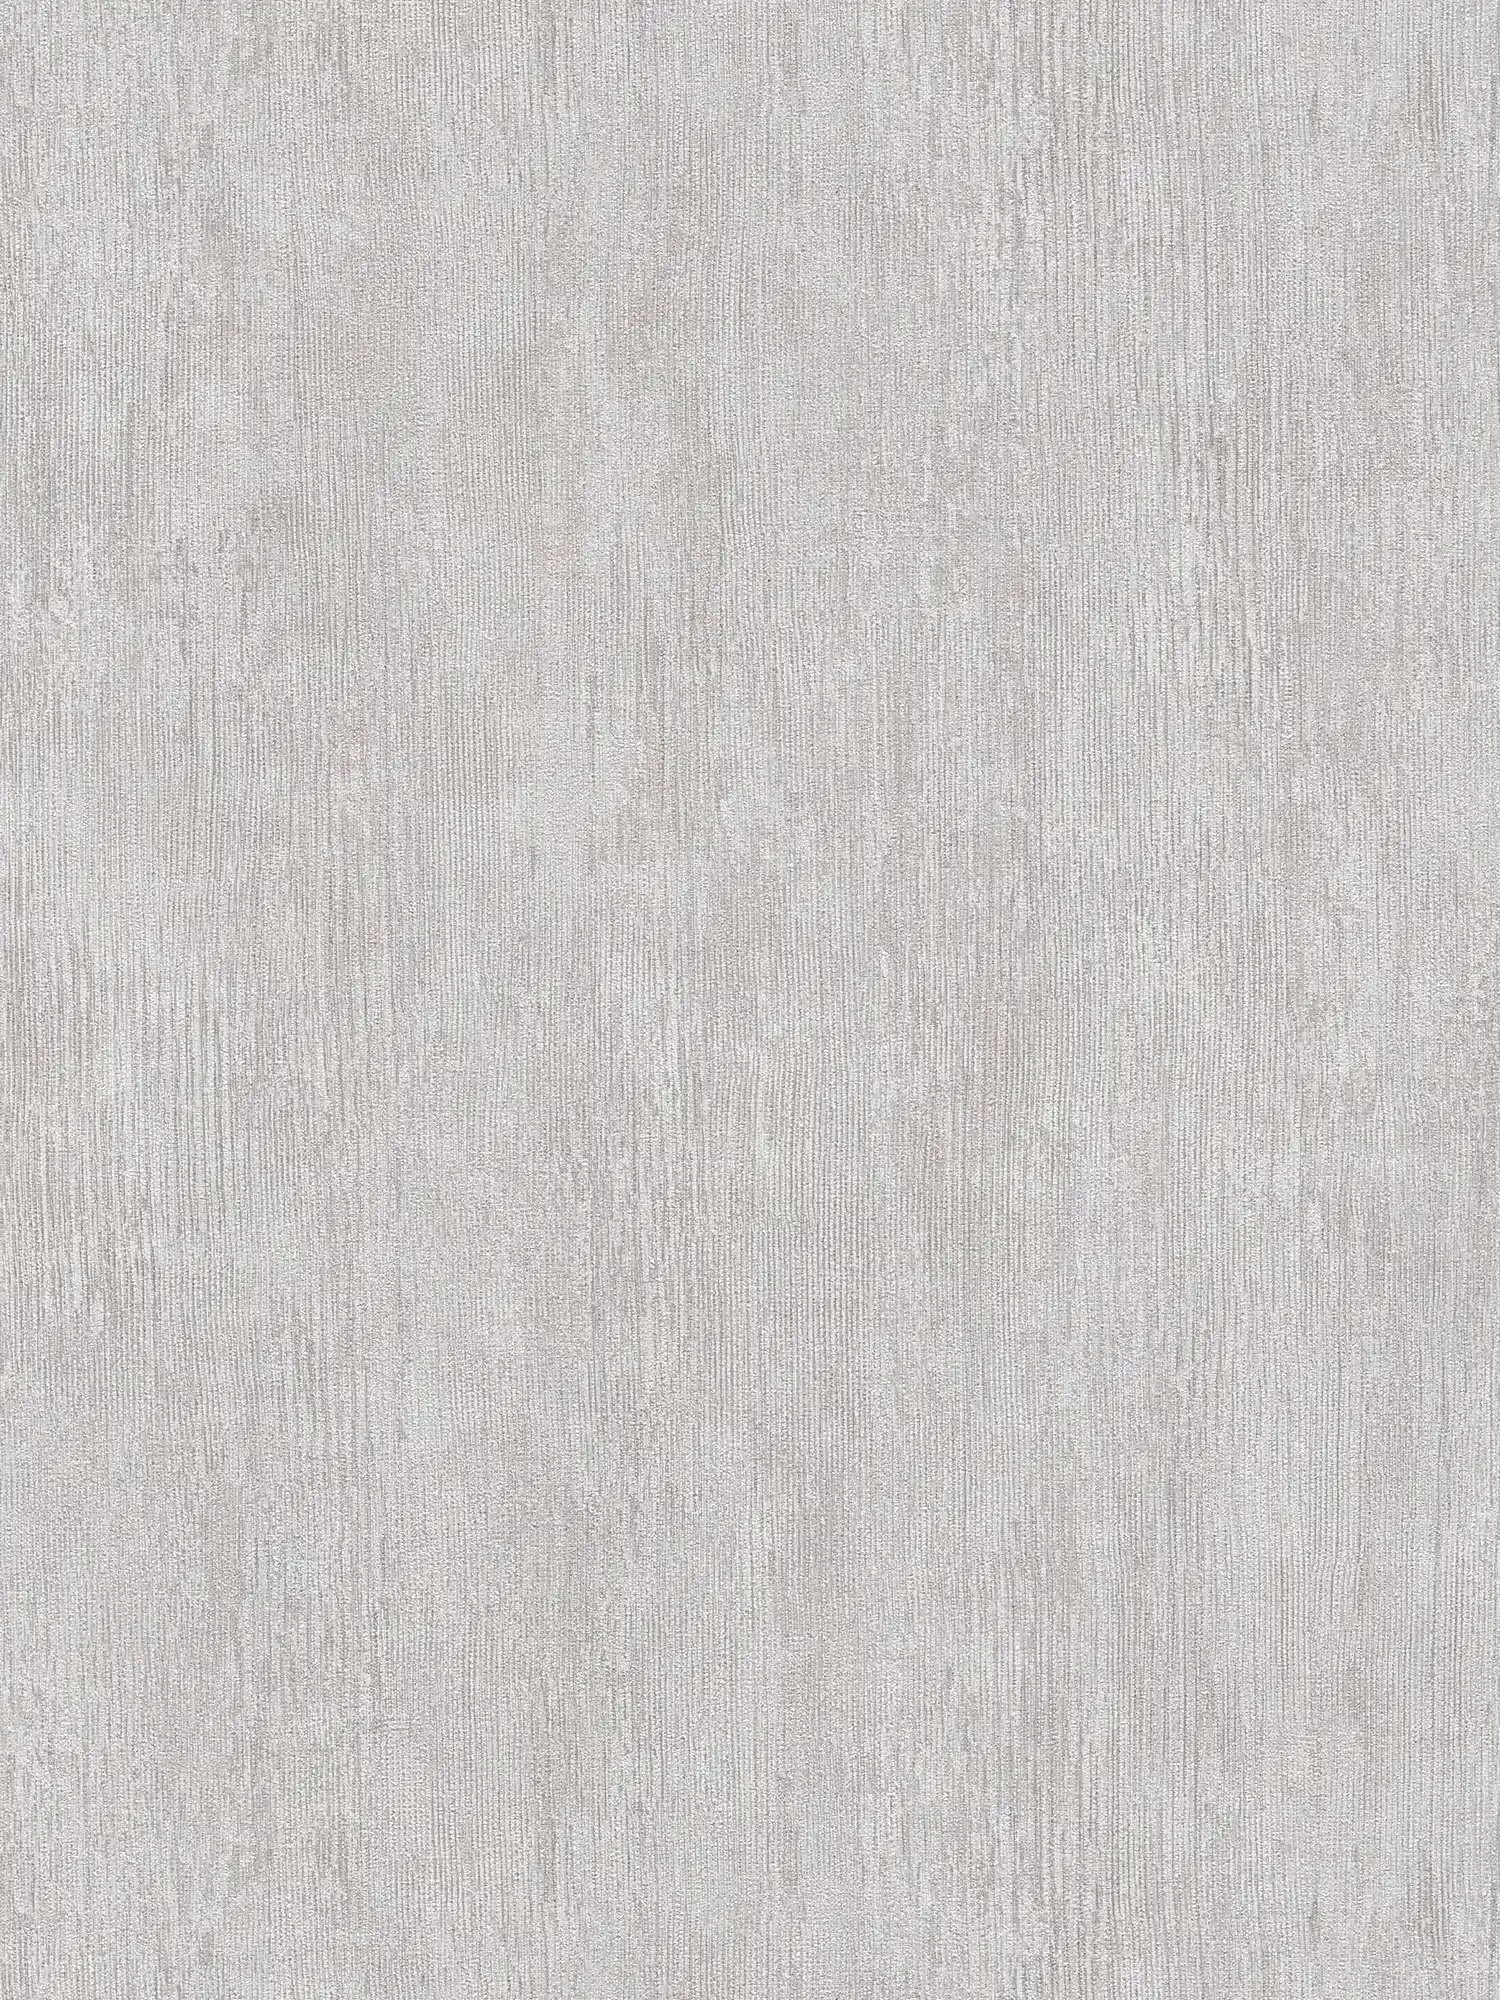 Unitapete Riefen-Design, Industrial Style – Grau, Weiß
